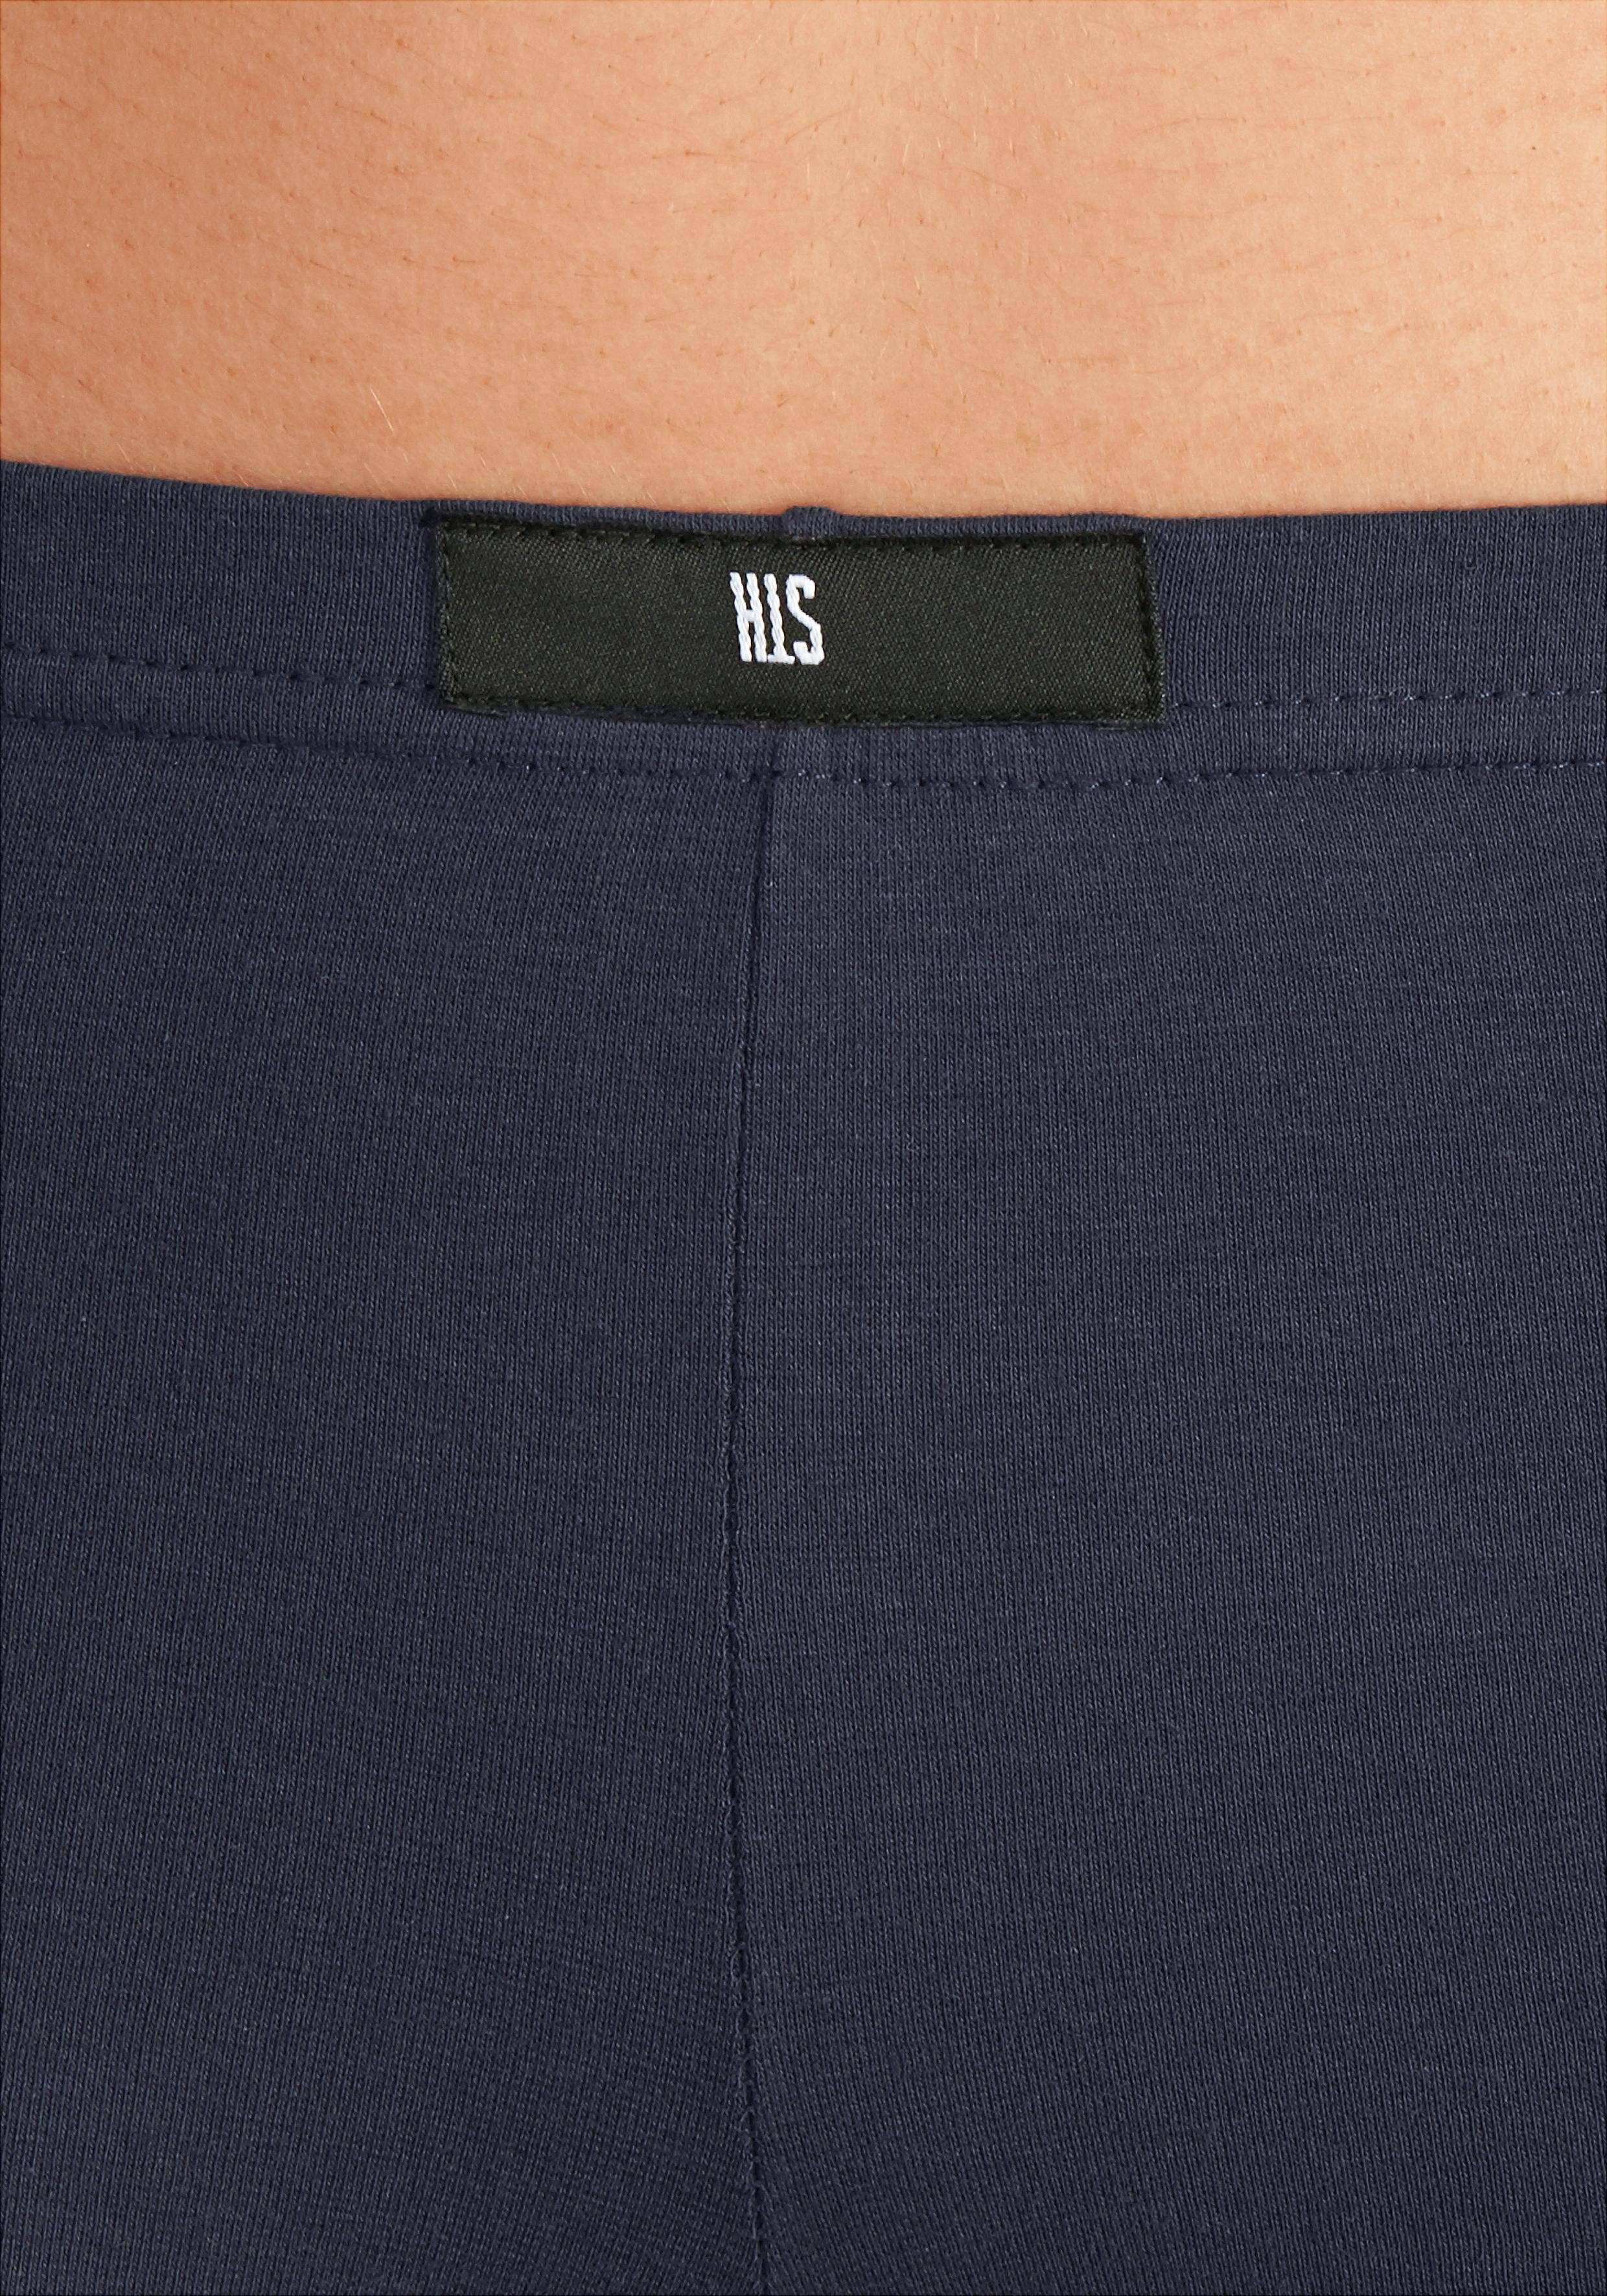 Wäsche/Bademode Unterhosen H.I.S Panty (4 Stück) mit H.I.S Label vorn